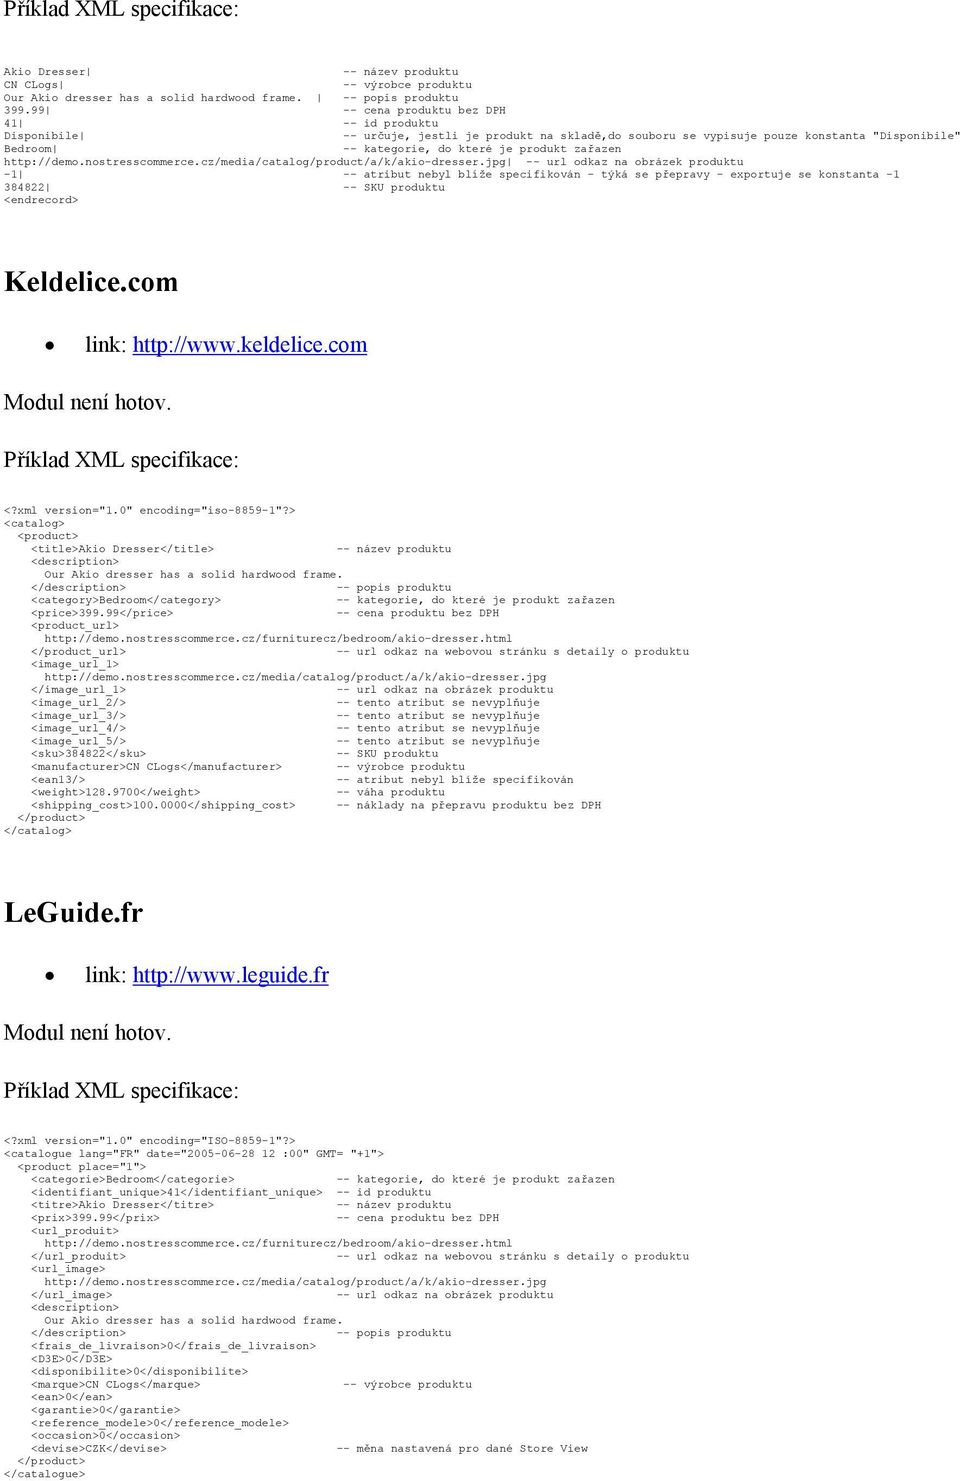 blíže specifikován - týká se přepravy - exportuje se konstanta -1 384822 -- SKU produktu <endrecord> Keldelice.com link: http://www.keldelice.com Modul není hotov. <?xml version="1.